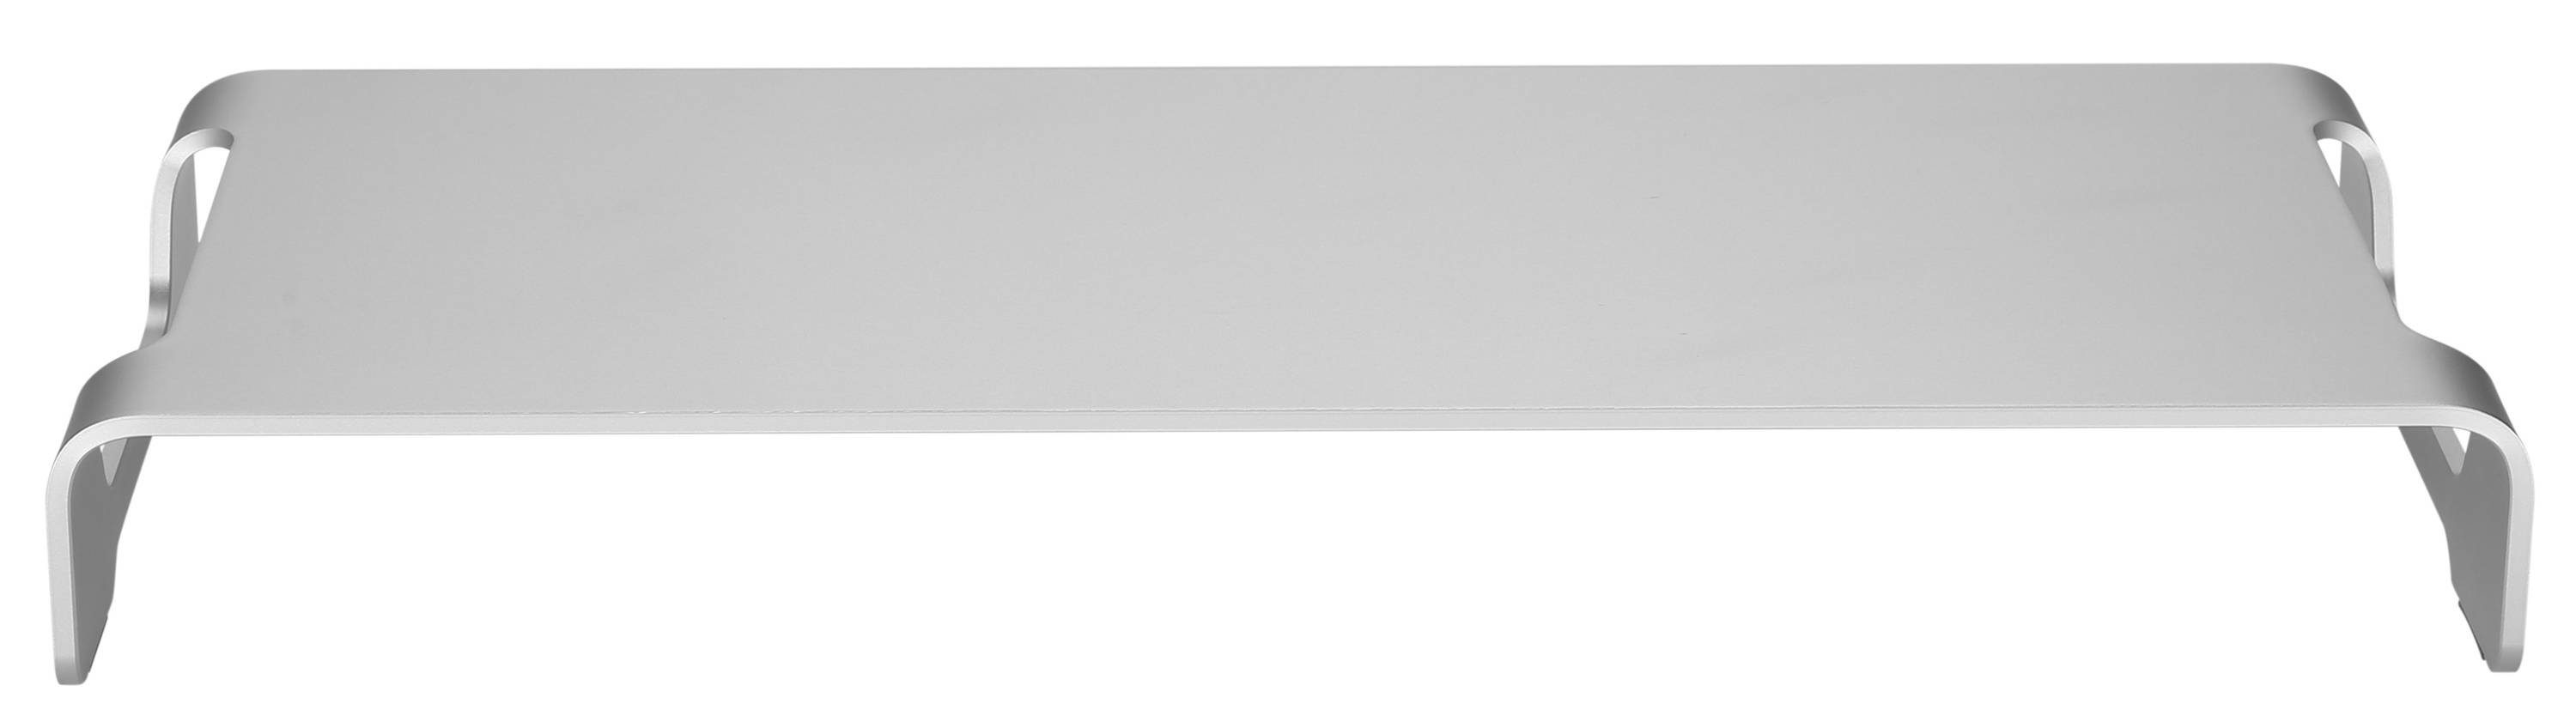 Tisch RICOO Stauraum Schreibtischaufsatz MTS-042, Monitorerhöhung Monitorständer Aufsatz Bildschirm mit